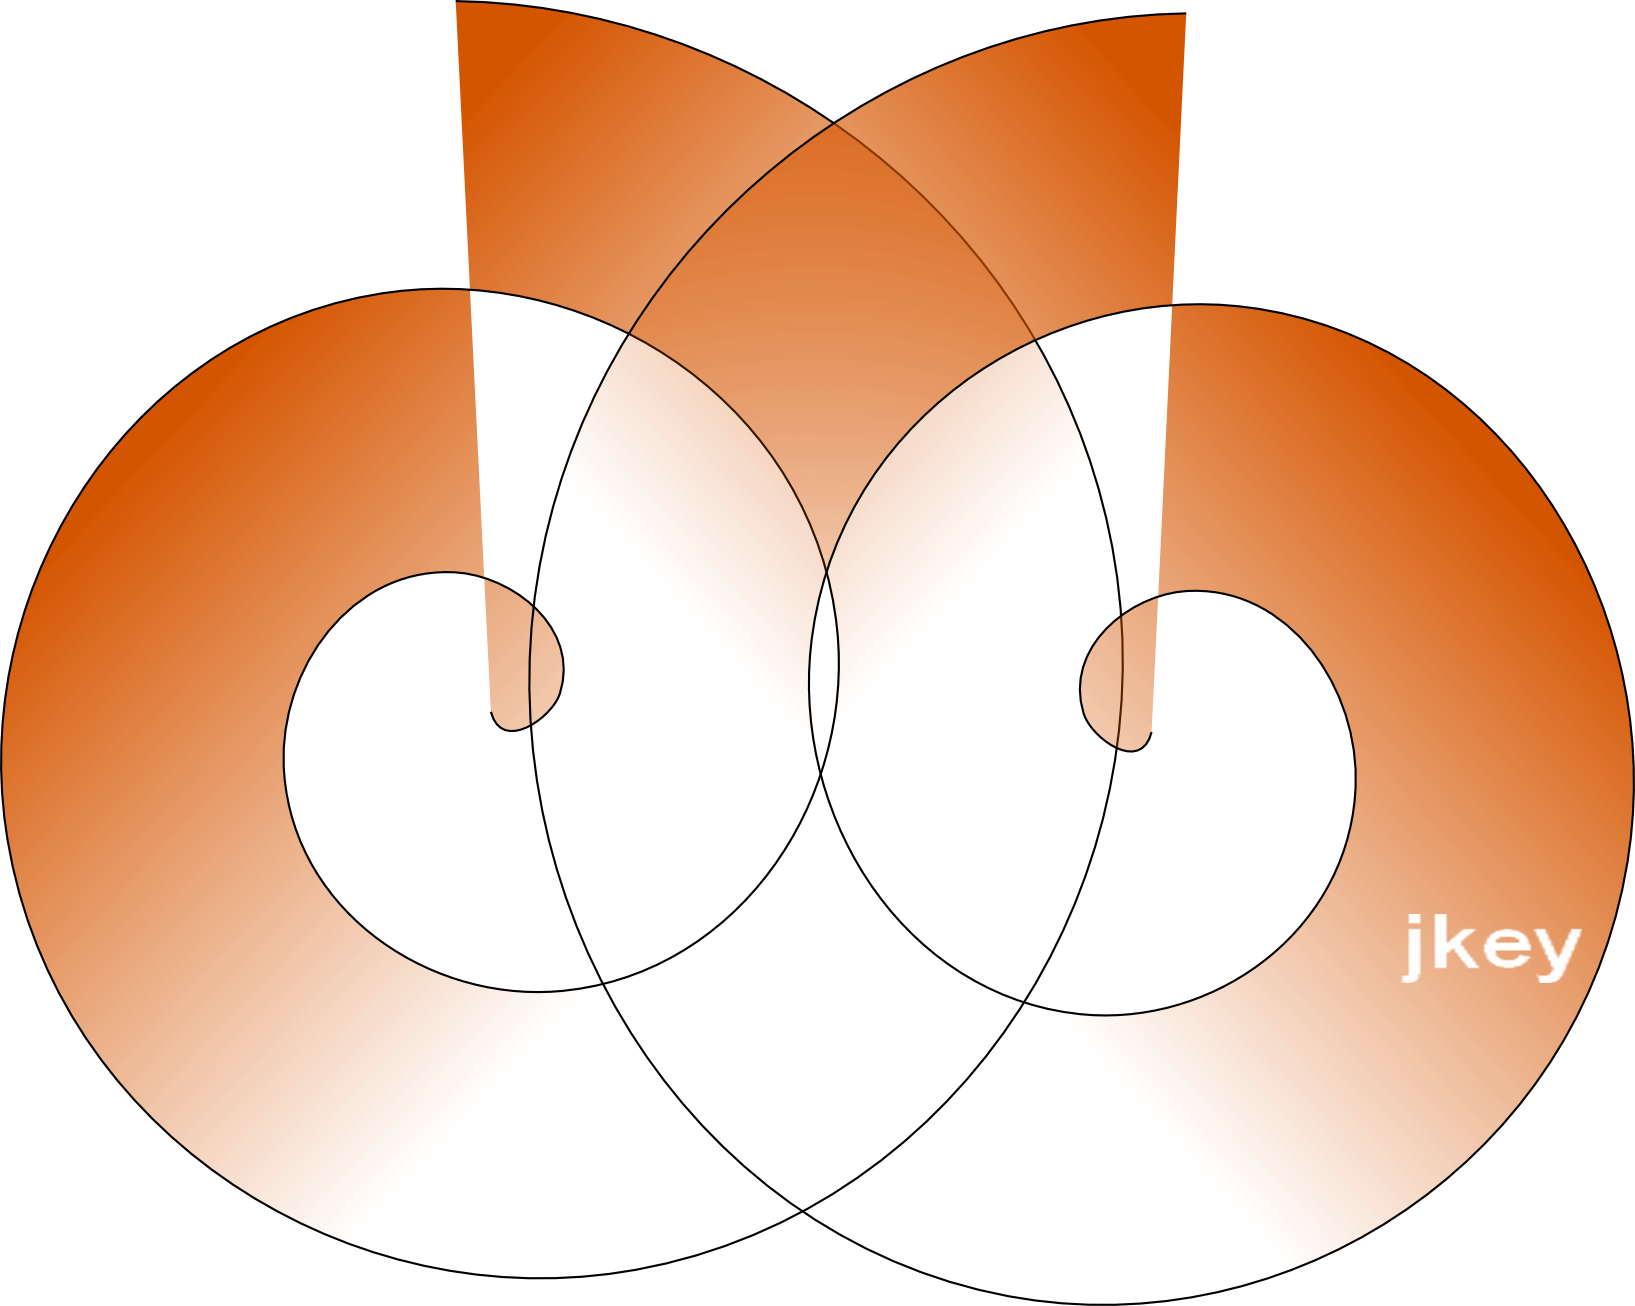 Jkeys by d2 software